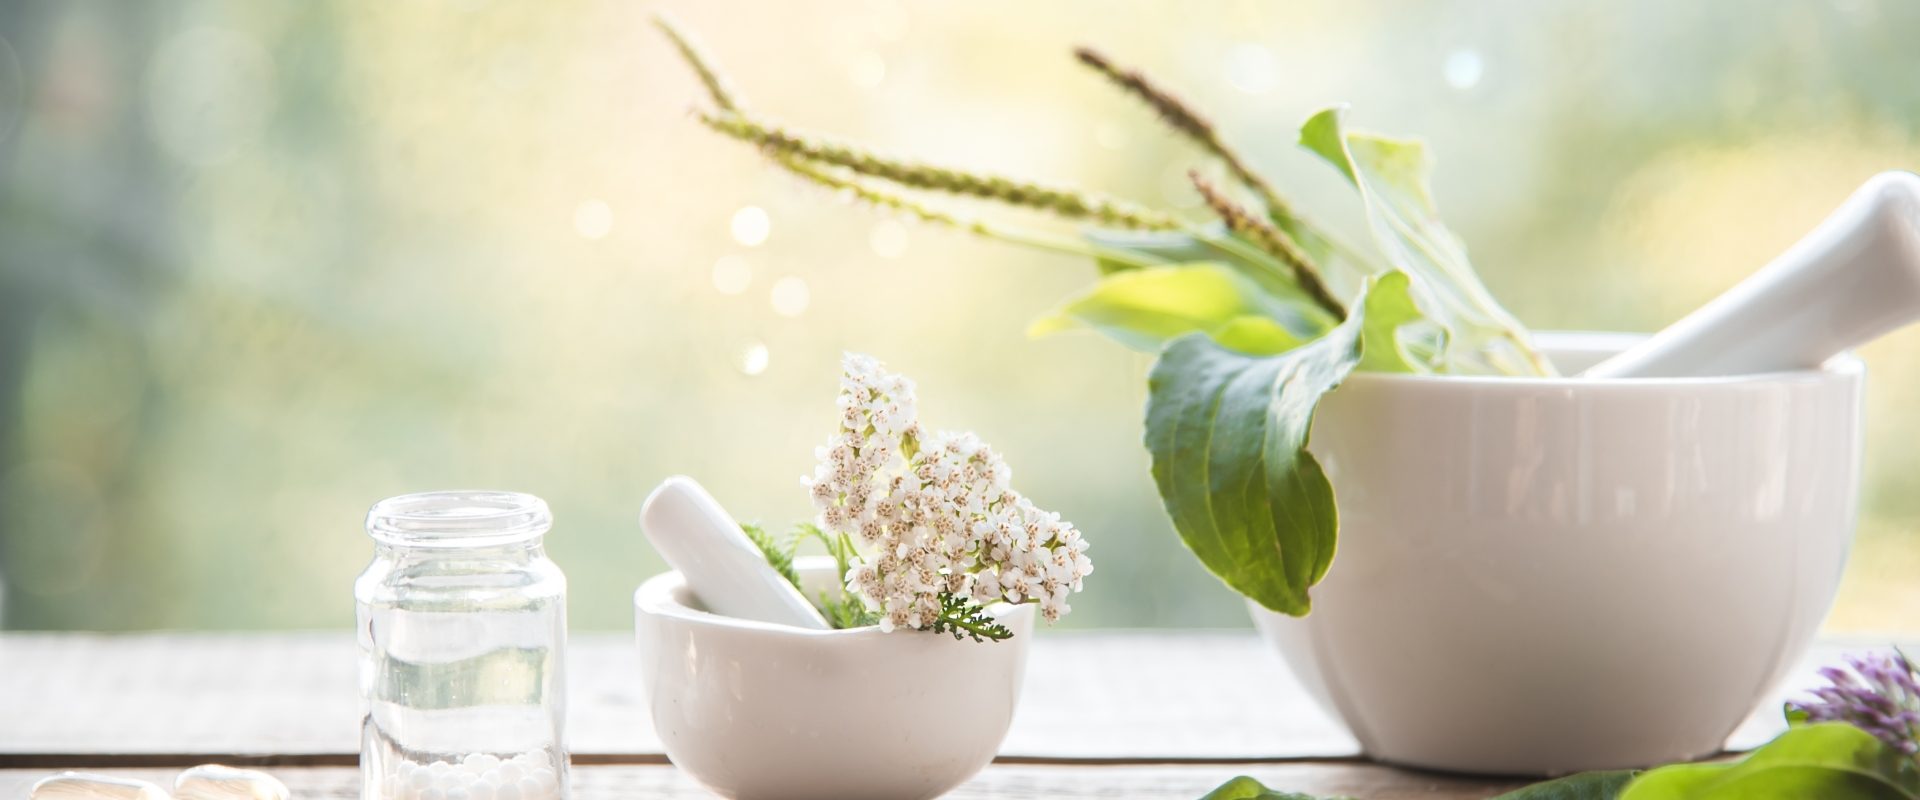 Lek homeopatyczny Phosphorus na energię i zwiększenie sił witalnych. Liście roślin w białym moździerzu stojącym na stole w ogrodzie, obok leżą granulki leków homeopatycznych.